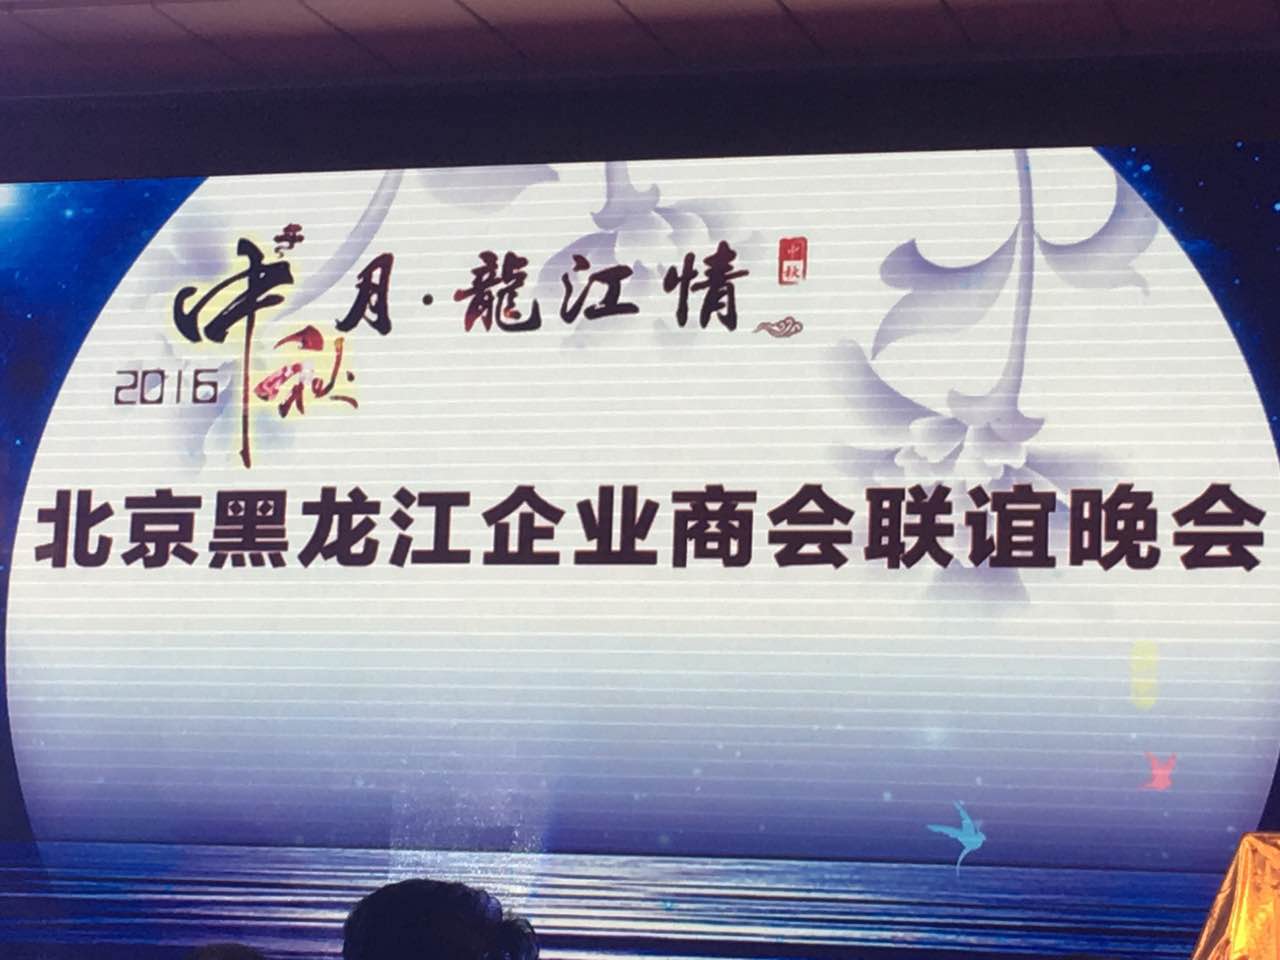 仟亿达总裁王元圆（证券代码831999）应邀参加北京黑龙江企业商会联谊晚会